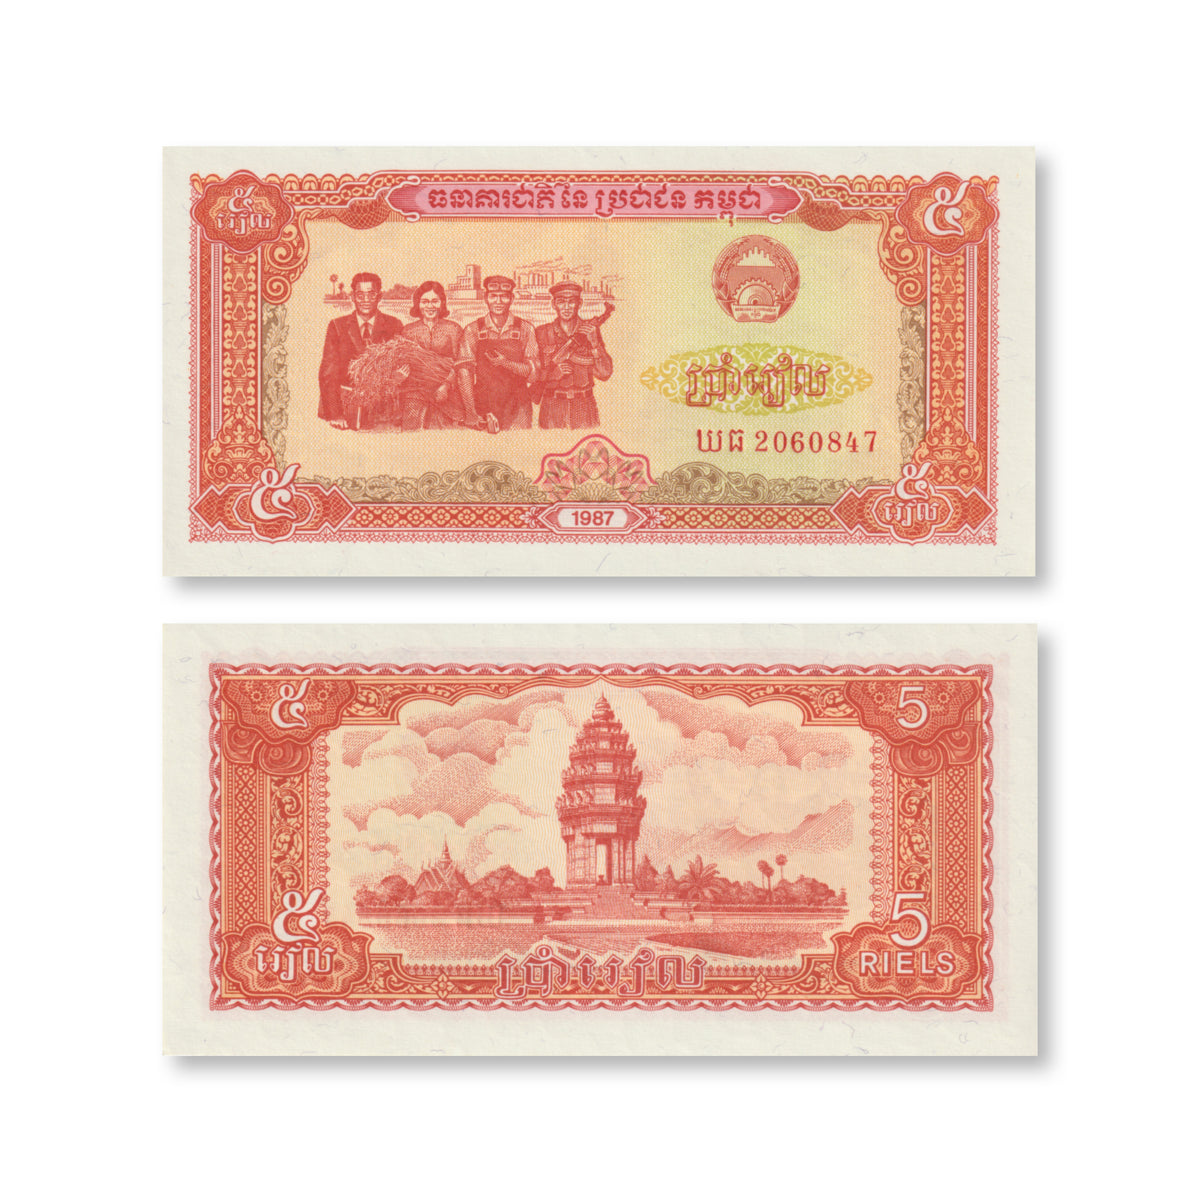 Cambodia 5 Riels, 1987, B309a, P33, UNC